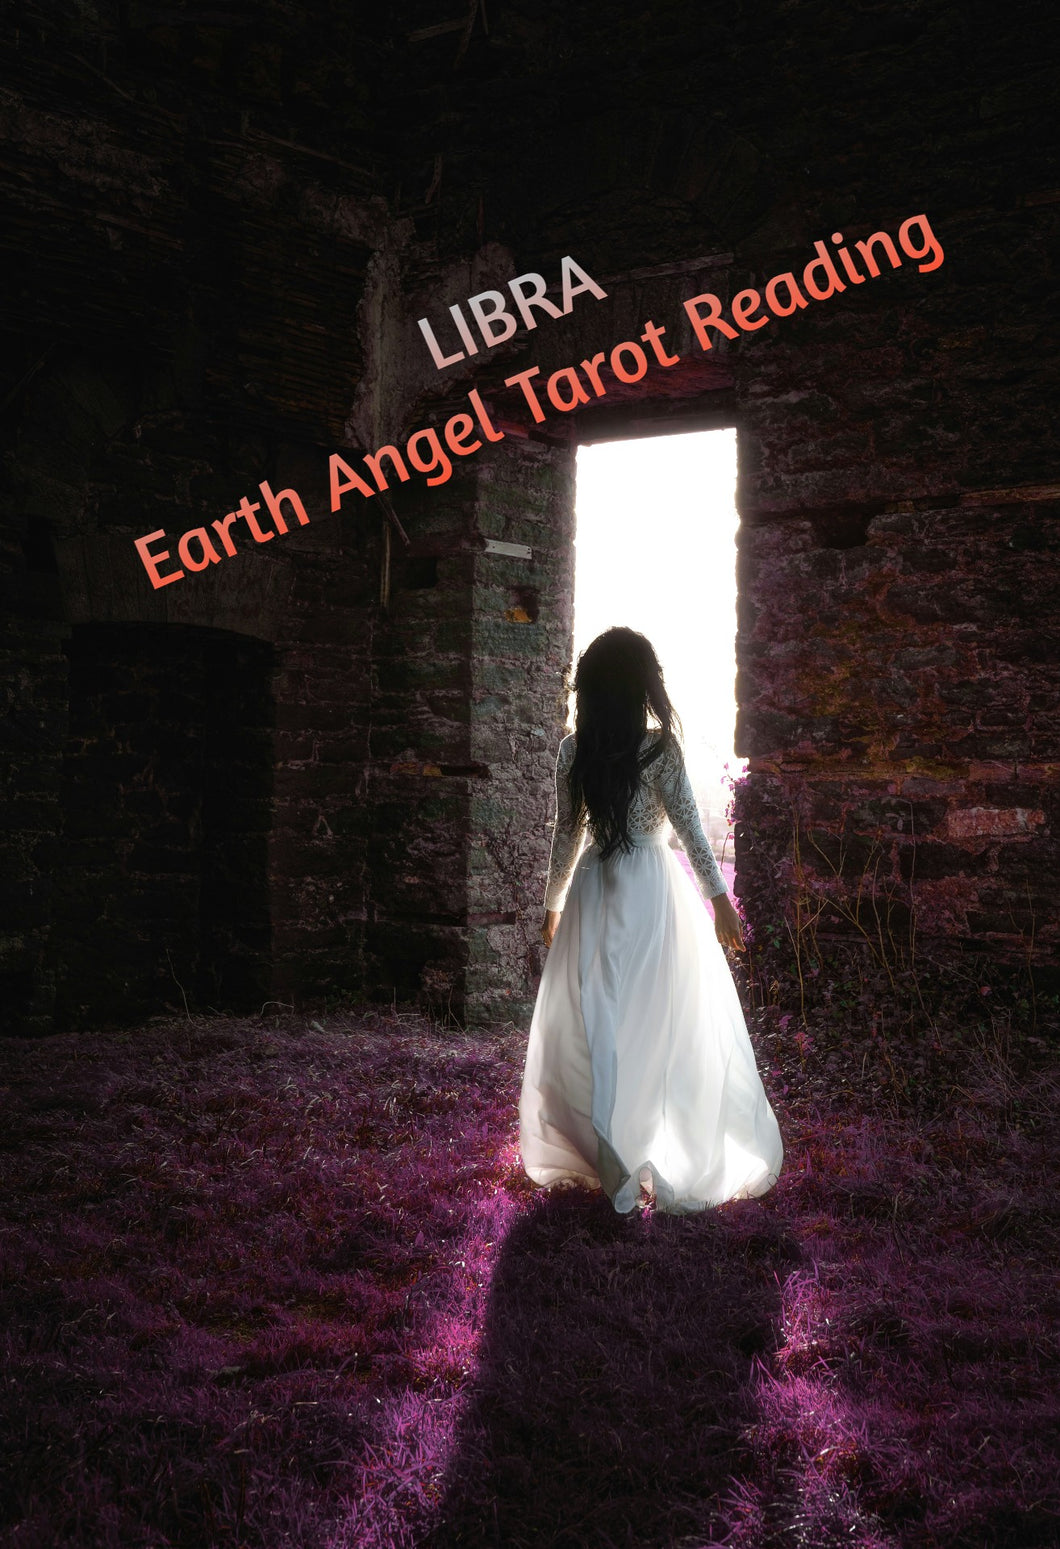 Libra Earth Angel Tarot Reading